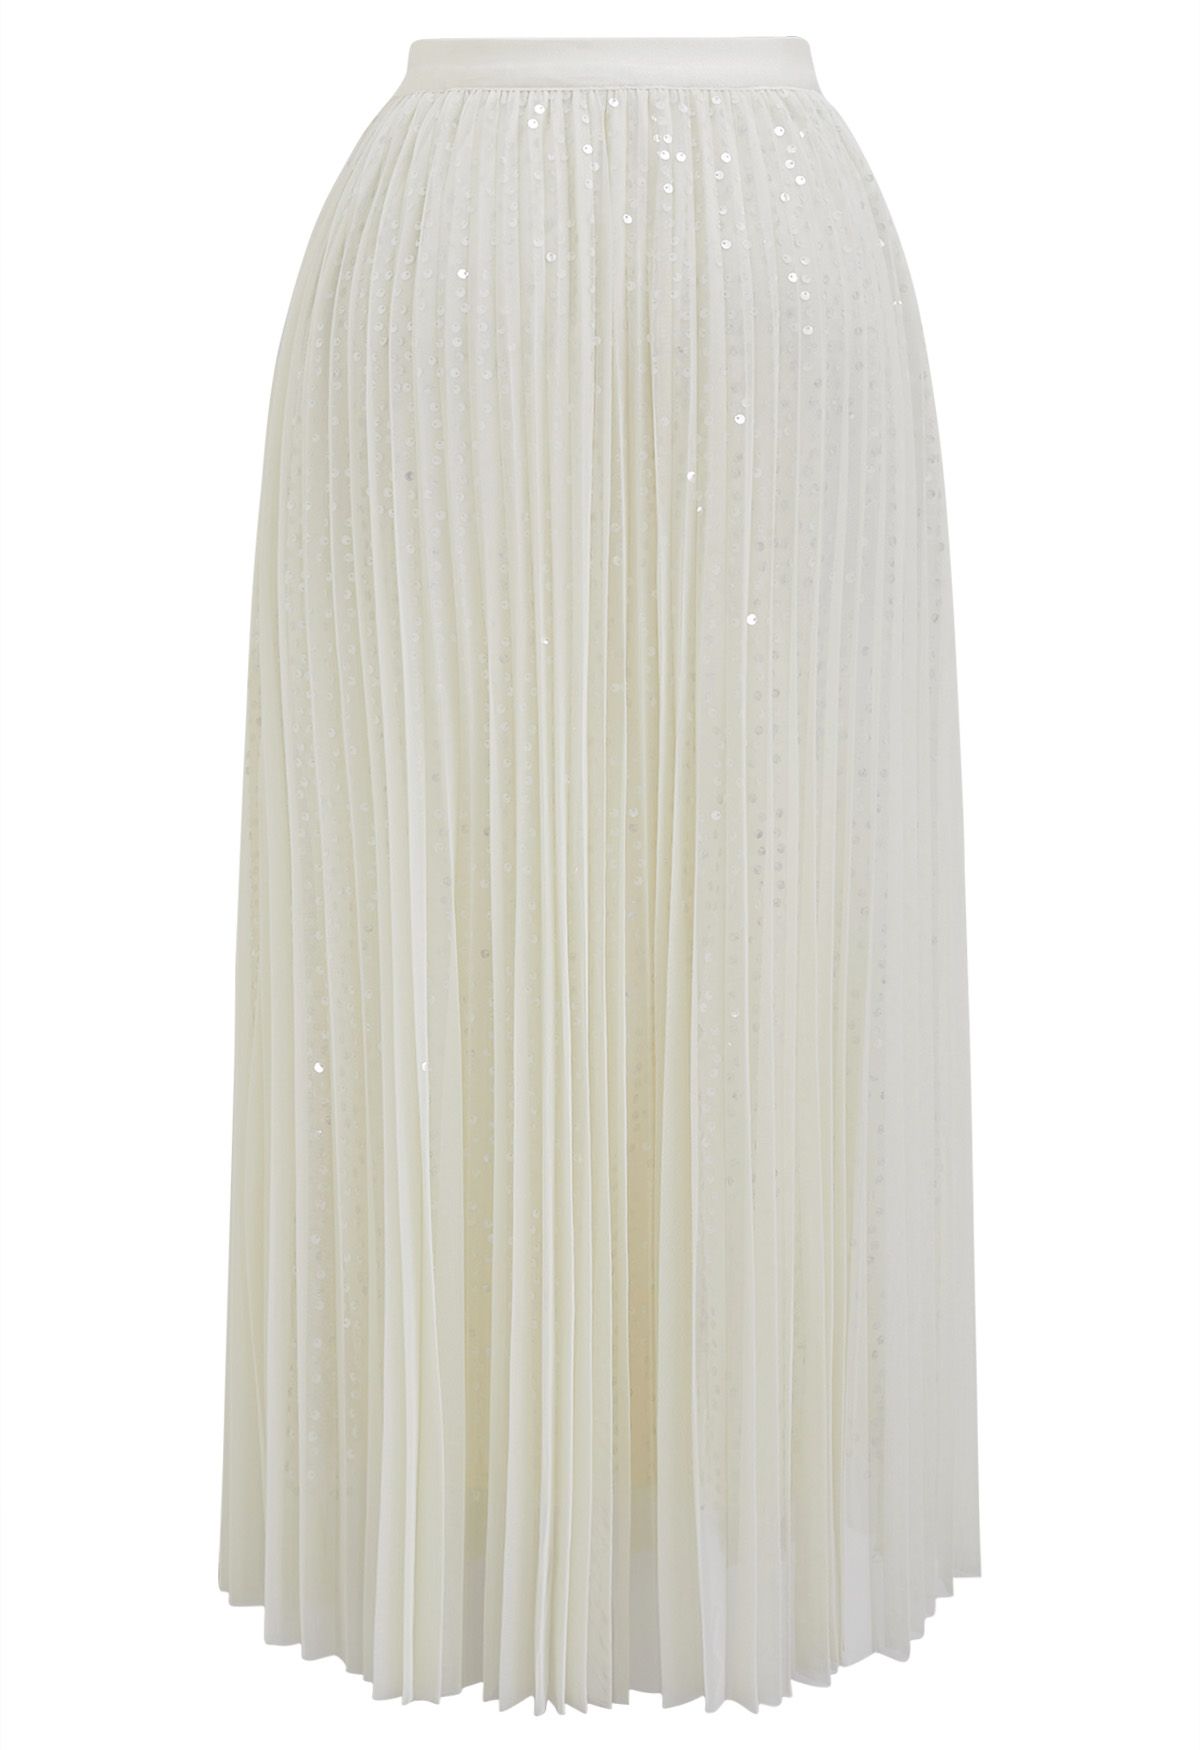 Glister Sequin Trim Mesh Tulle Maxi Skirt in Cream